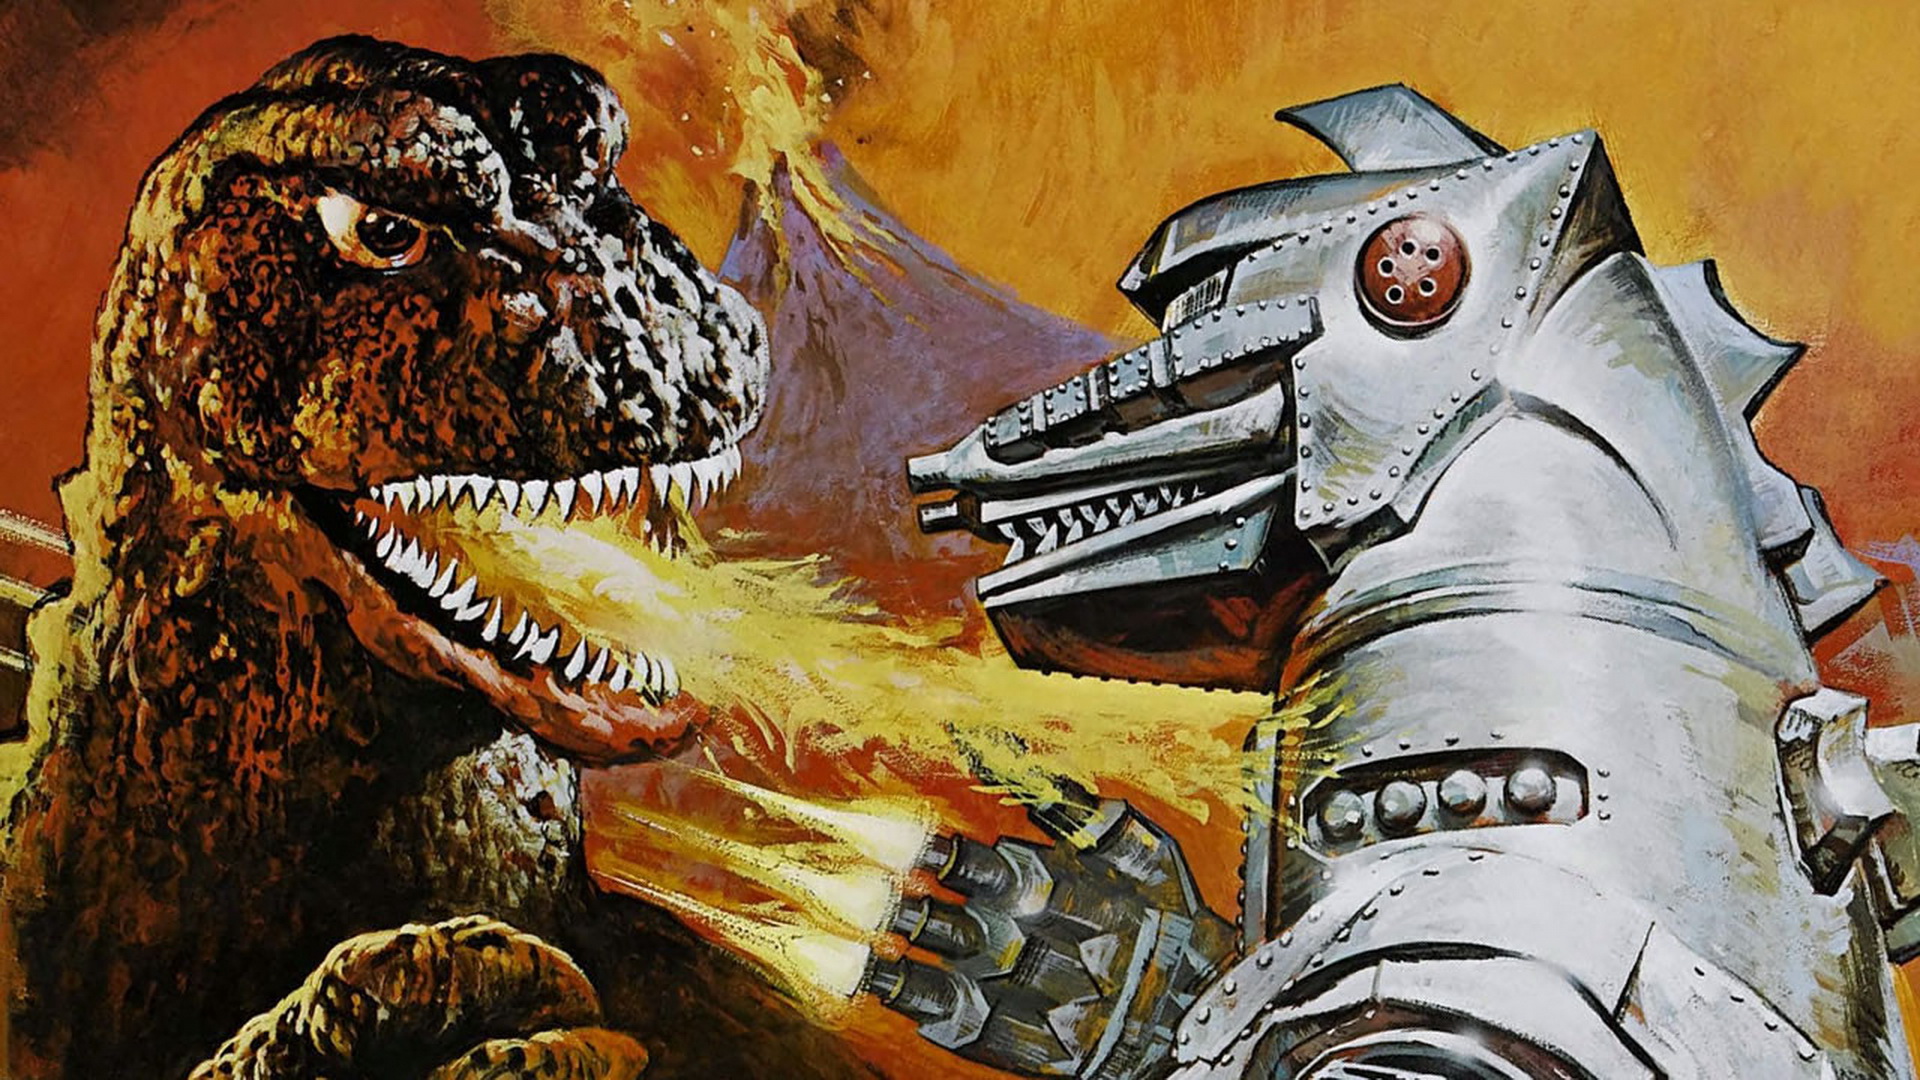 Godzilla Vs Mechagodzilla HD Wallpaper Background Image